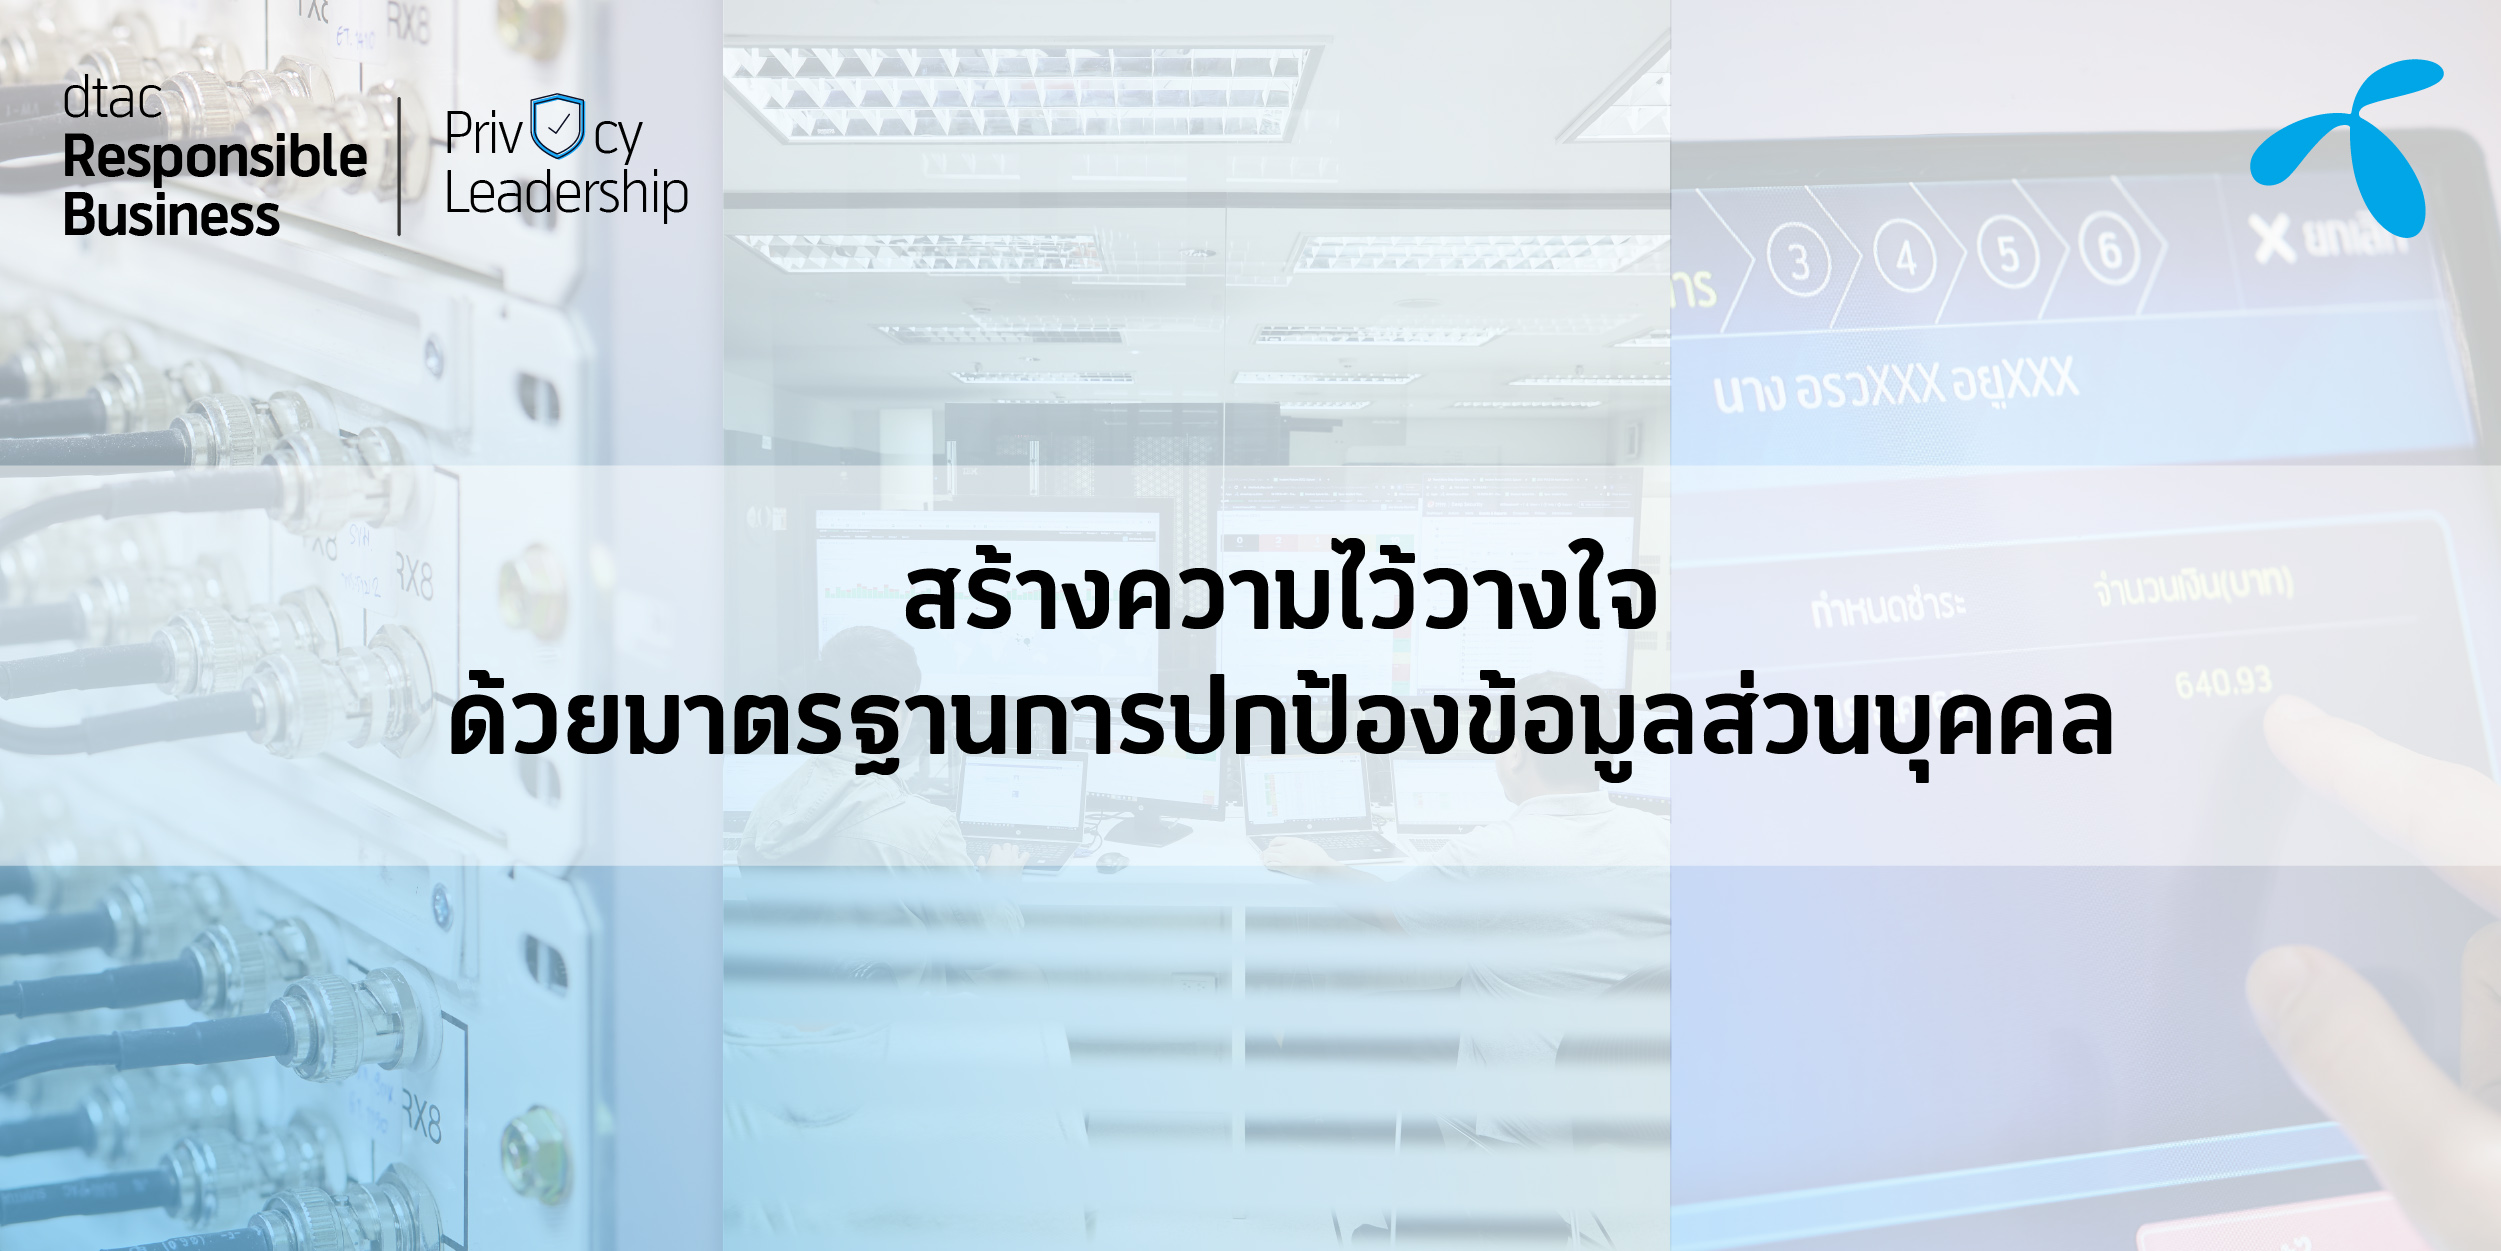 ดีแทคเน้นย้ำความเร่งด่วนของประเทศไทยในยกระดับมาตรฐานการปกป้องคุ้มครองข้อมูลส่วนบุคคล